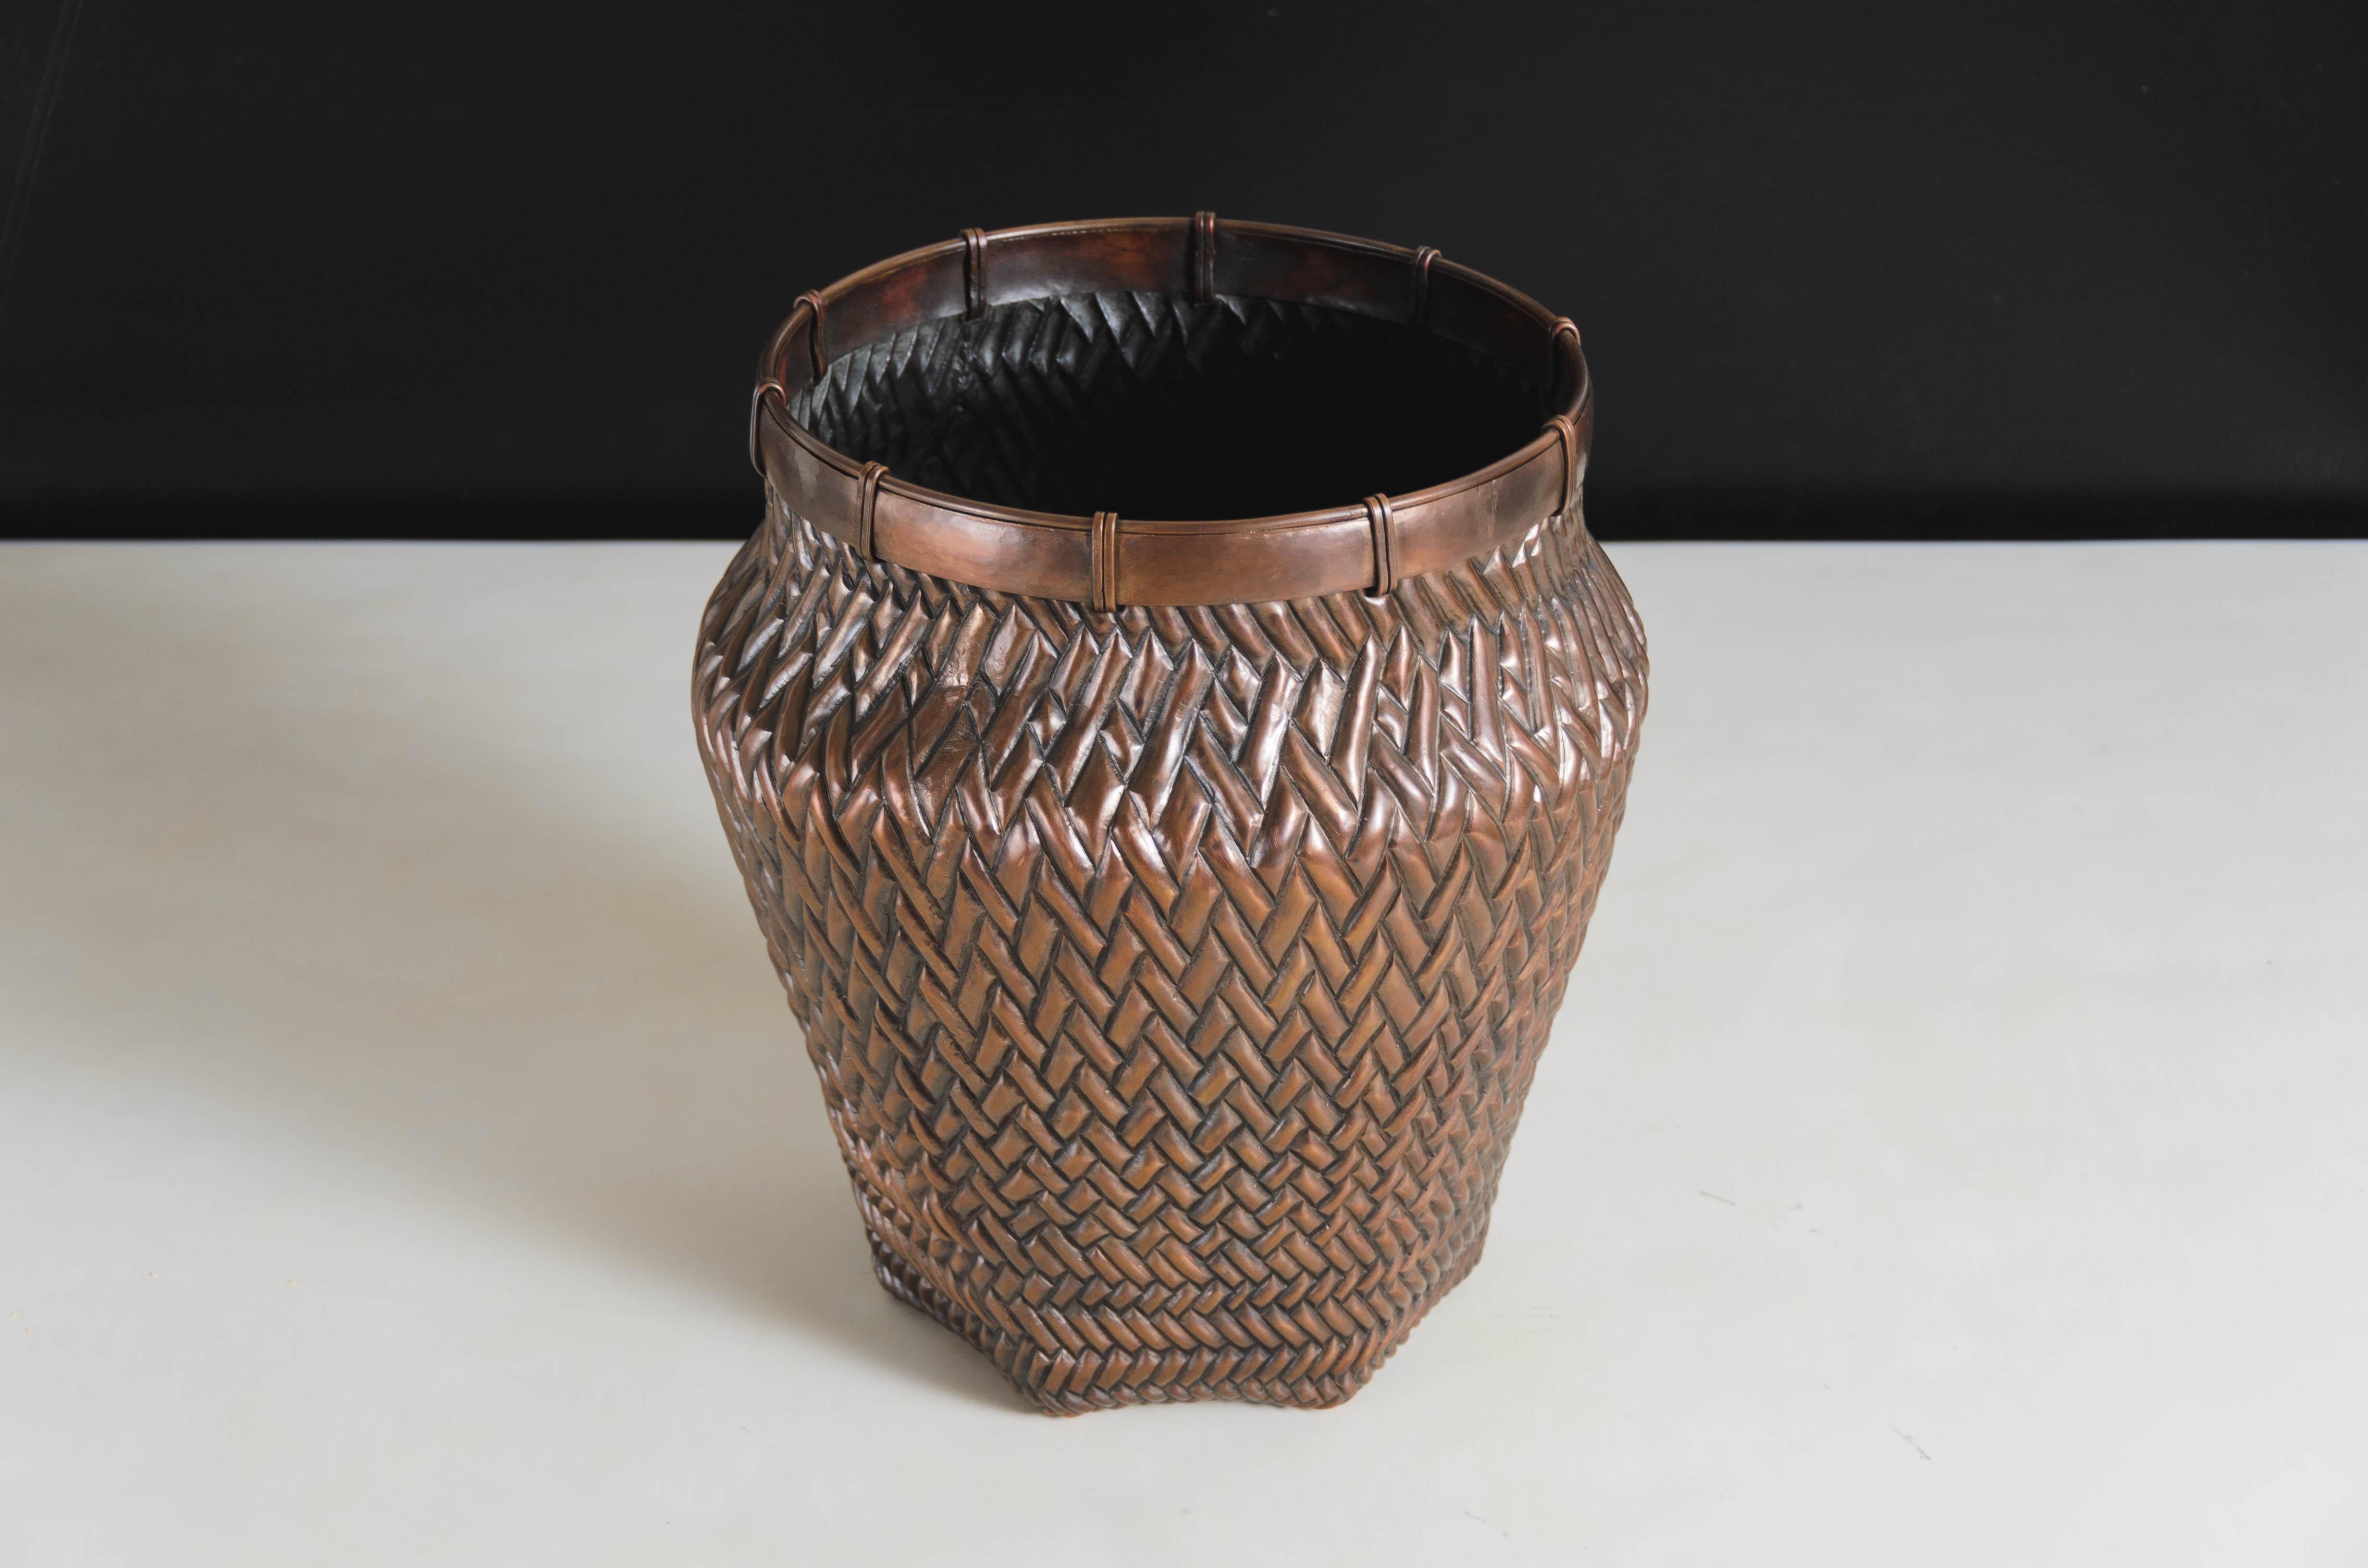 Vase mit Flechtmuster
Antikes Kupfer
Hand Repoussé
Limitierte Auflage
Jedes Stück wird individuell angefertigt und ist einzigartig. 
Liner für Blumenschmuck verwenden
Repoussé ist die traditionelle Kunst, ein dekoratives Relief von Hand auf